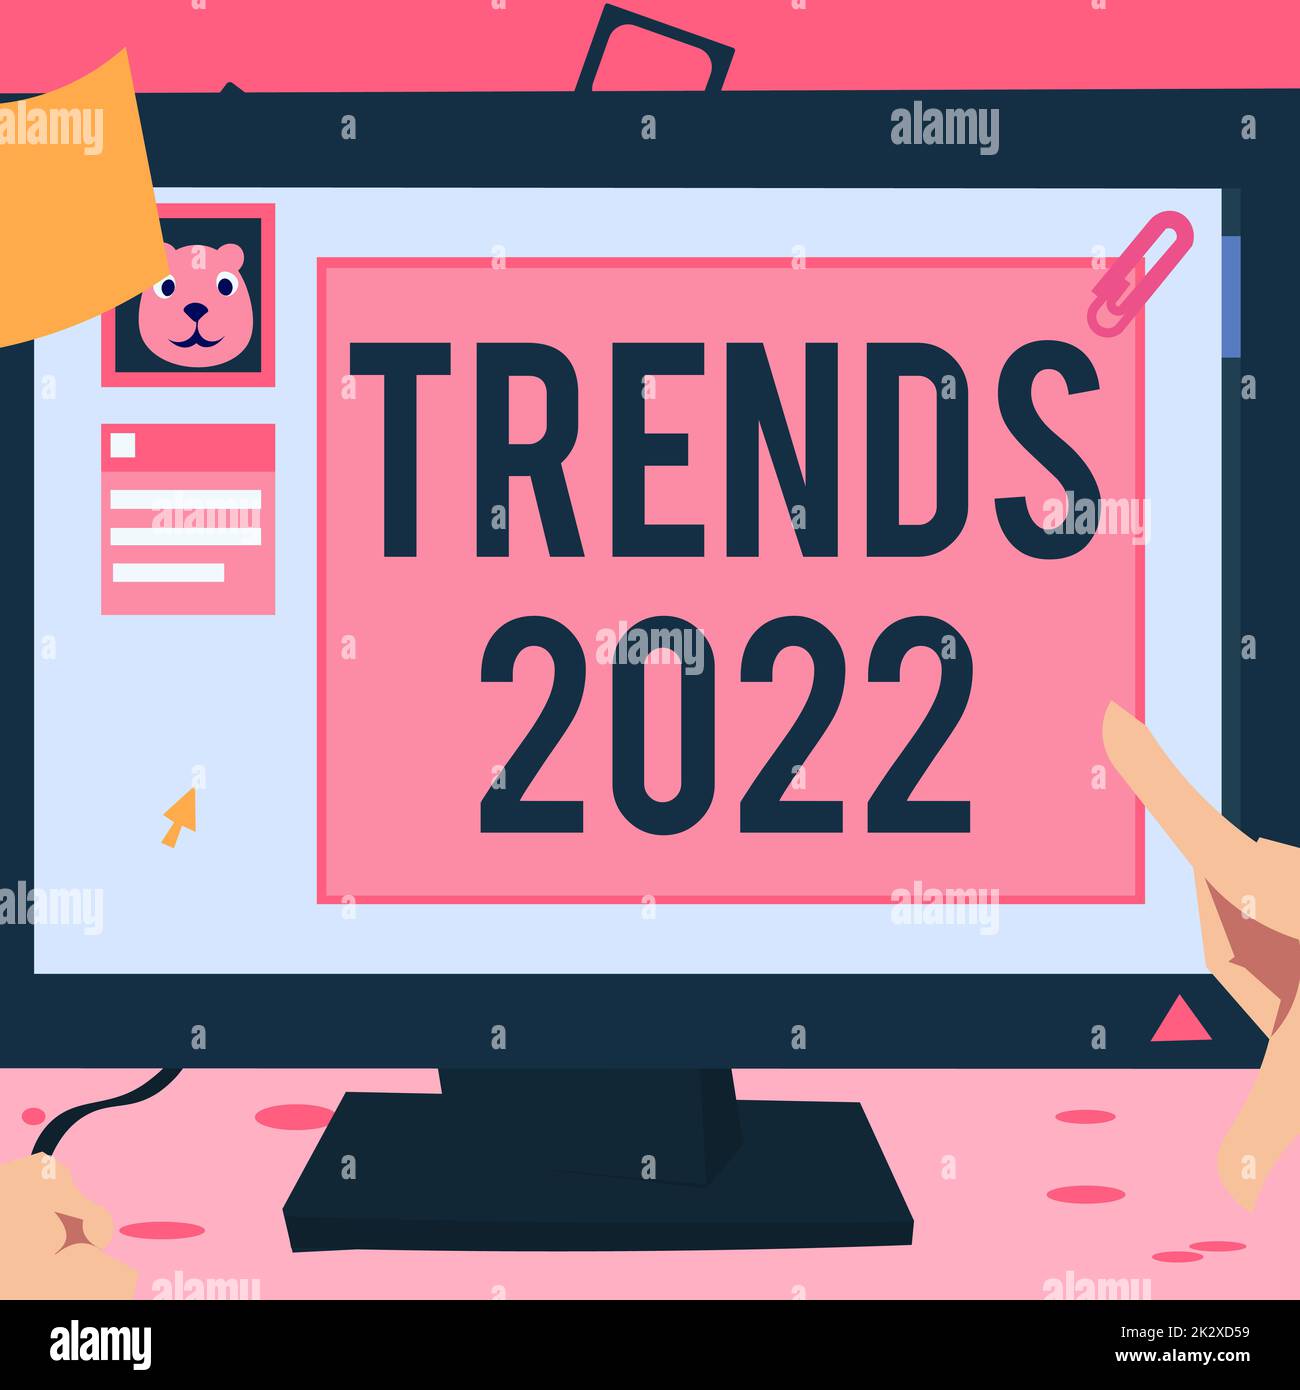 Textzeichen mit Trends 2022. Geschäftskonzept im kommenden Jahr vorherrschende Tendenz breit diskutiert Online Hand Touch Desktop Inside Webbrowser mit neuester Technologie. Stockfoto